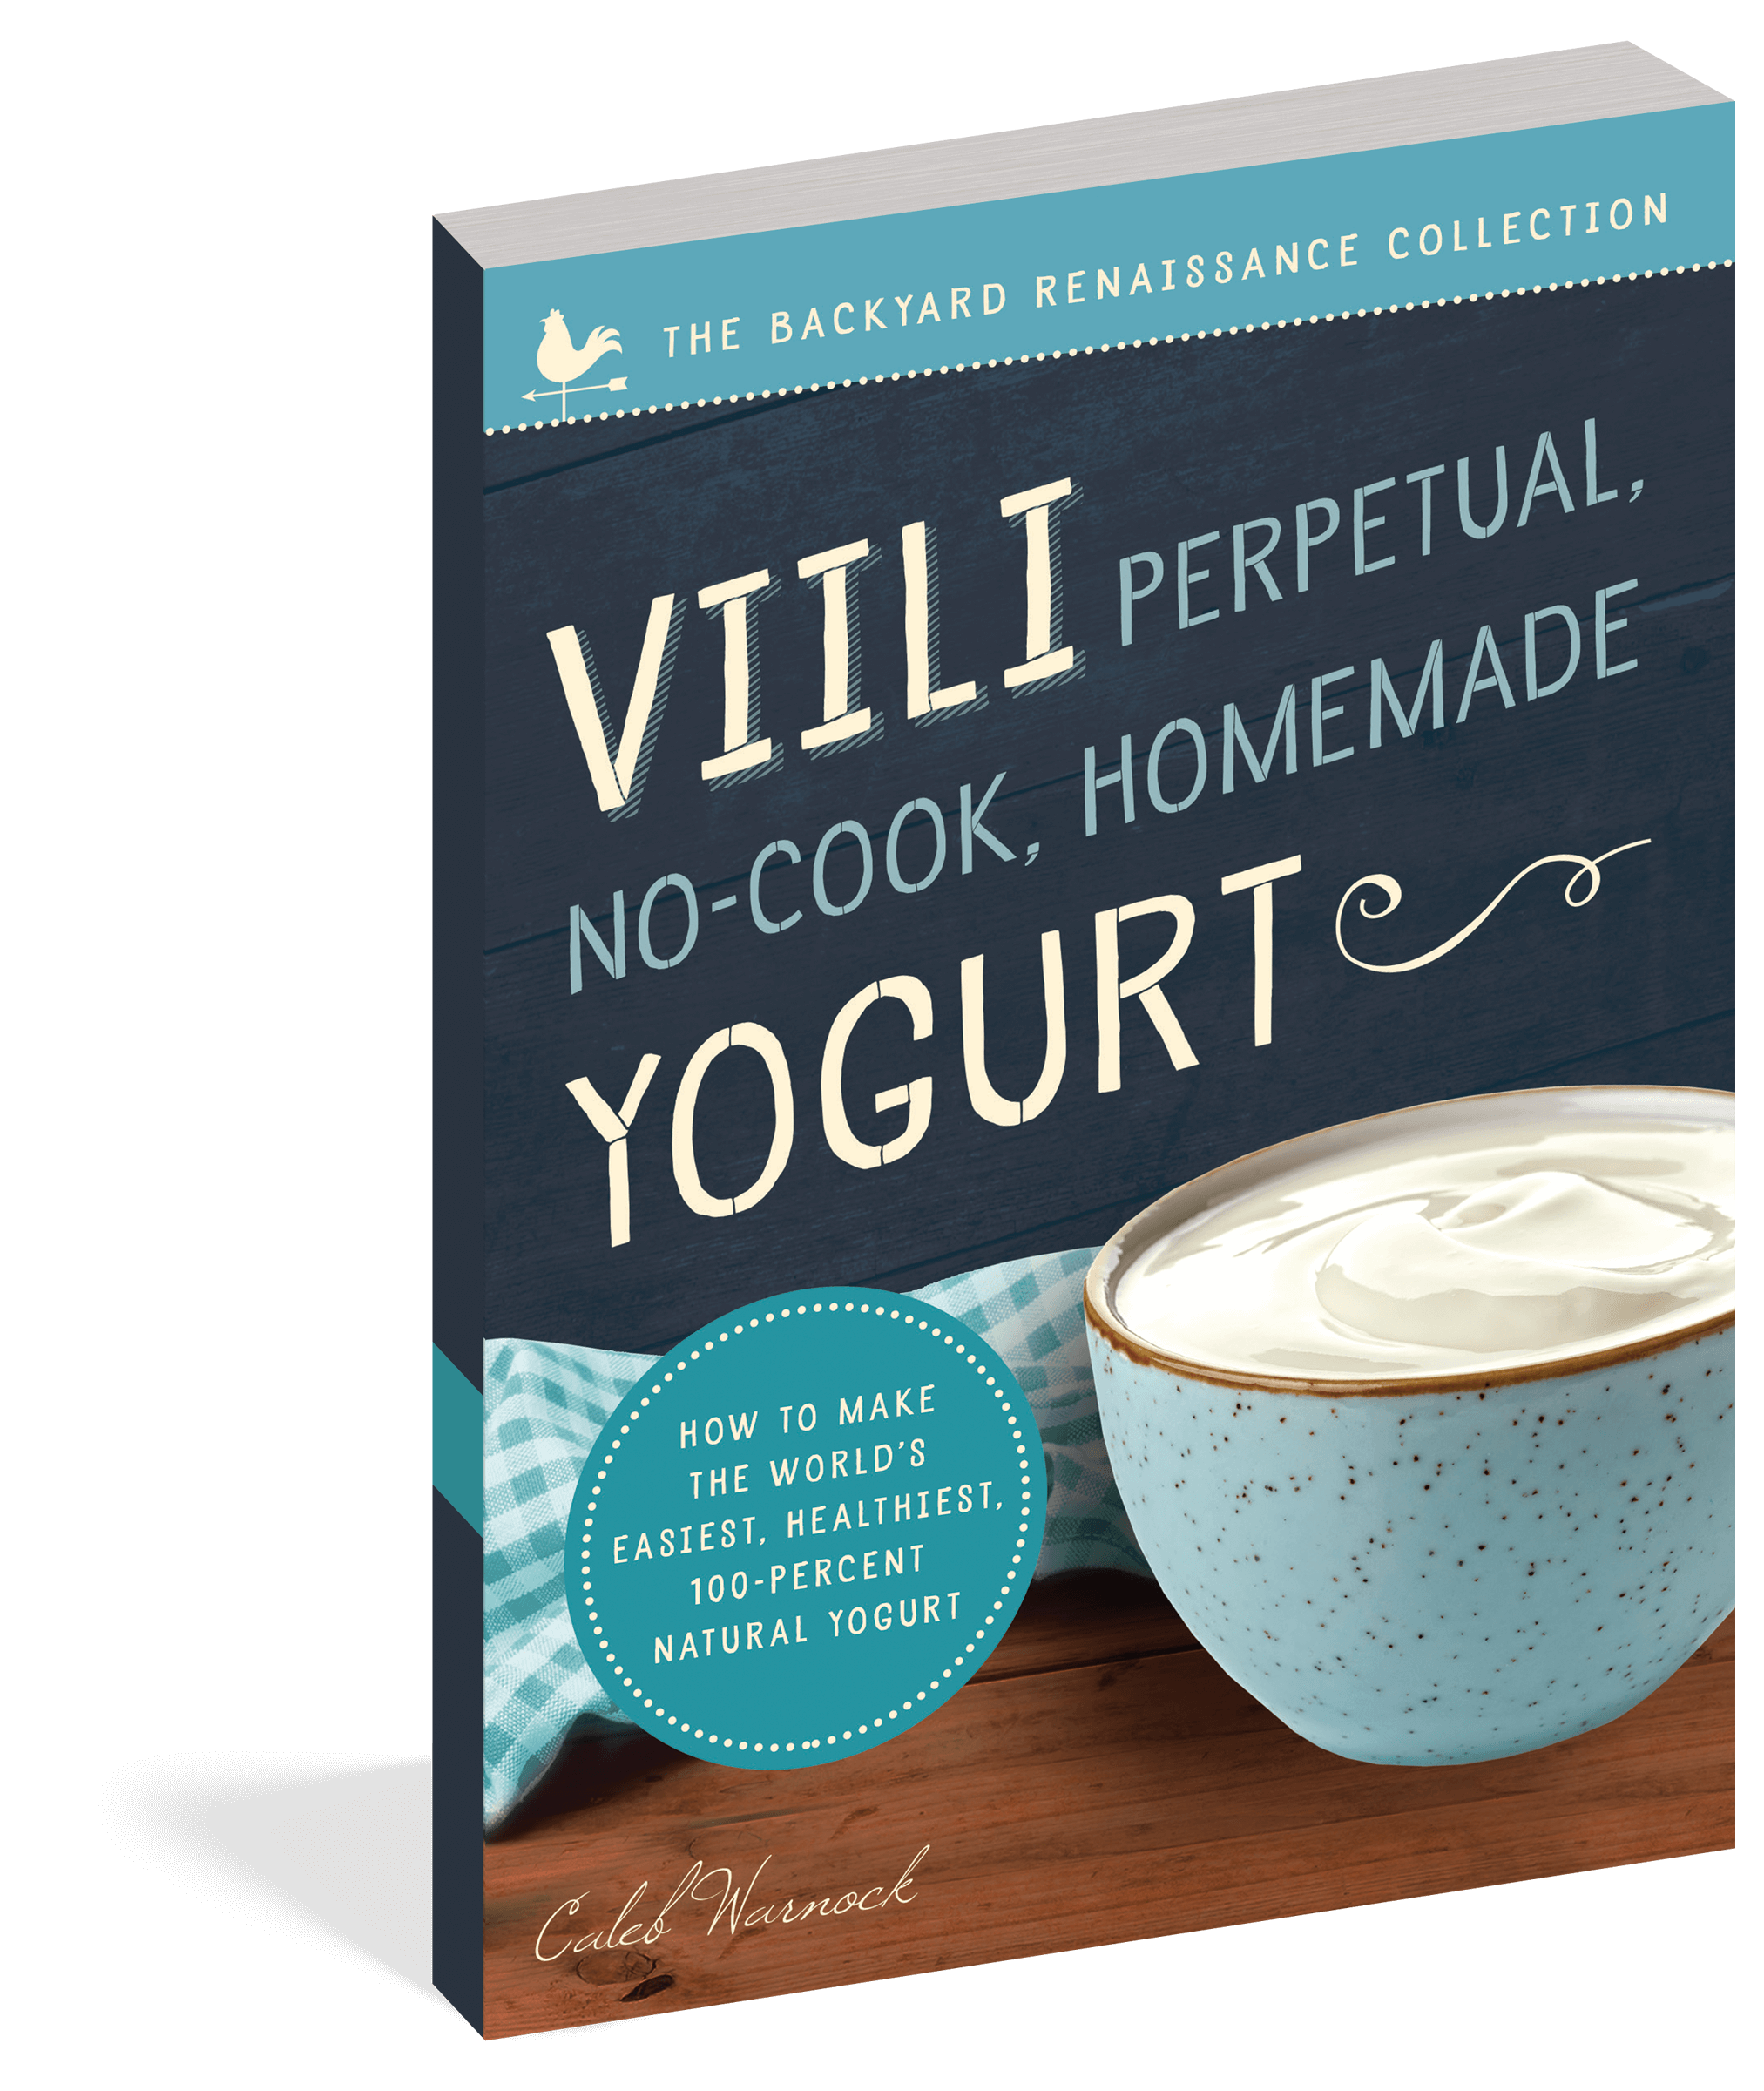 The cover of the book Viili Perpetual, No-Cook, Homemade Yogurt.